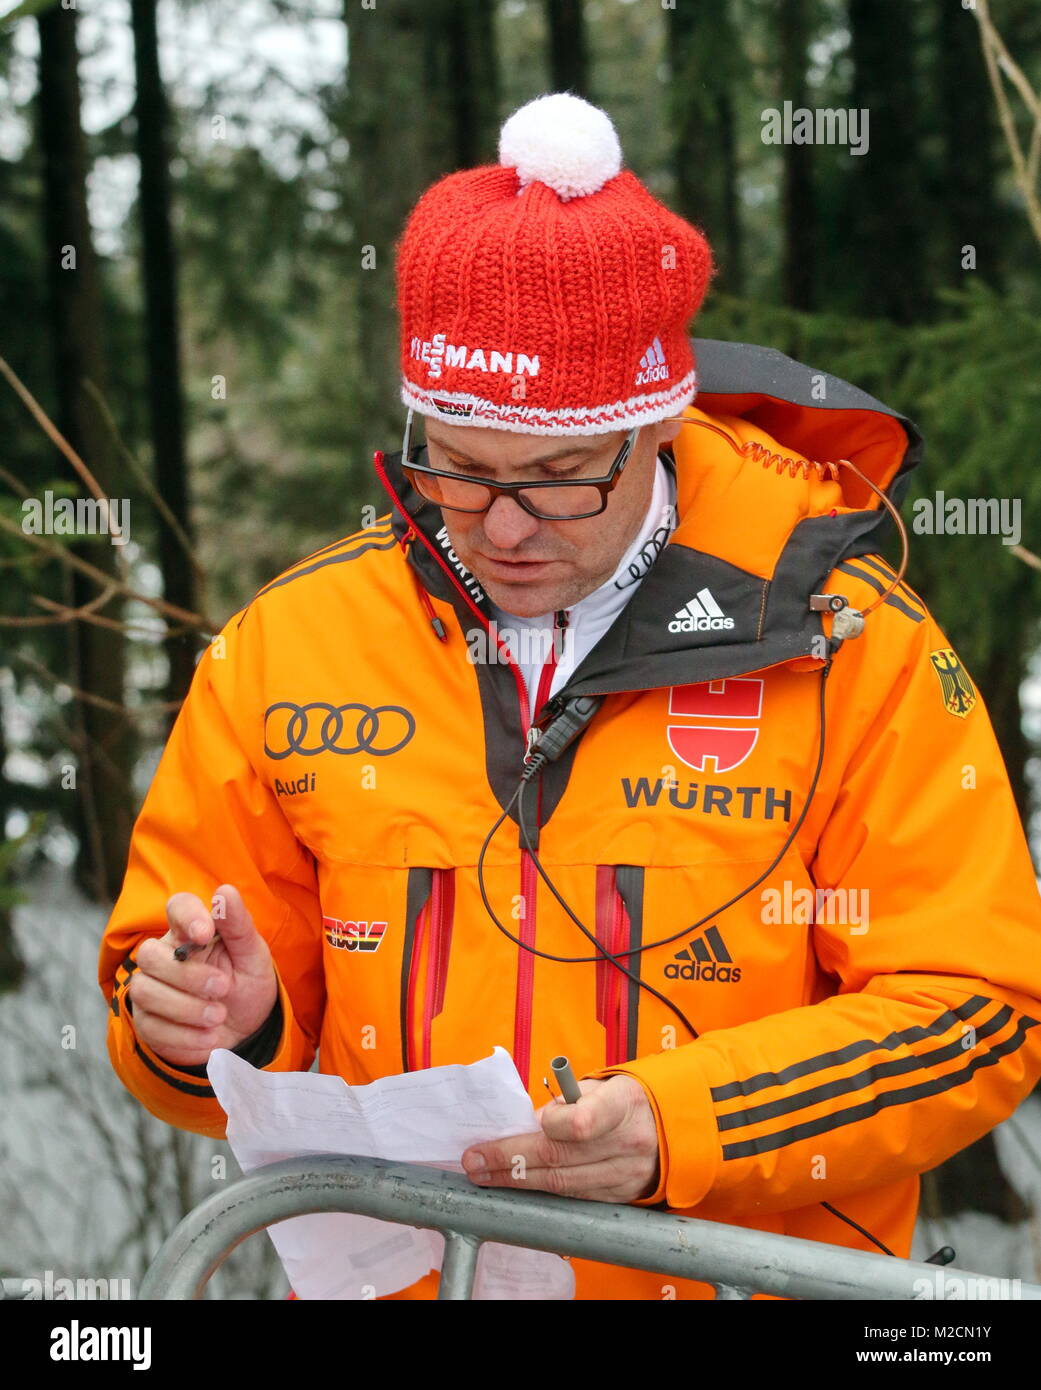 Bundestrainer Hermann Weinbuch studiert die Startliste beim Schwarzwaldpokal Schonach Teamwettkampf Stock Photo